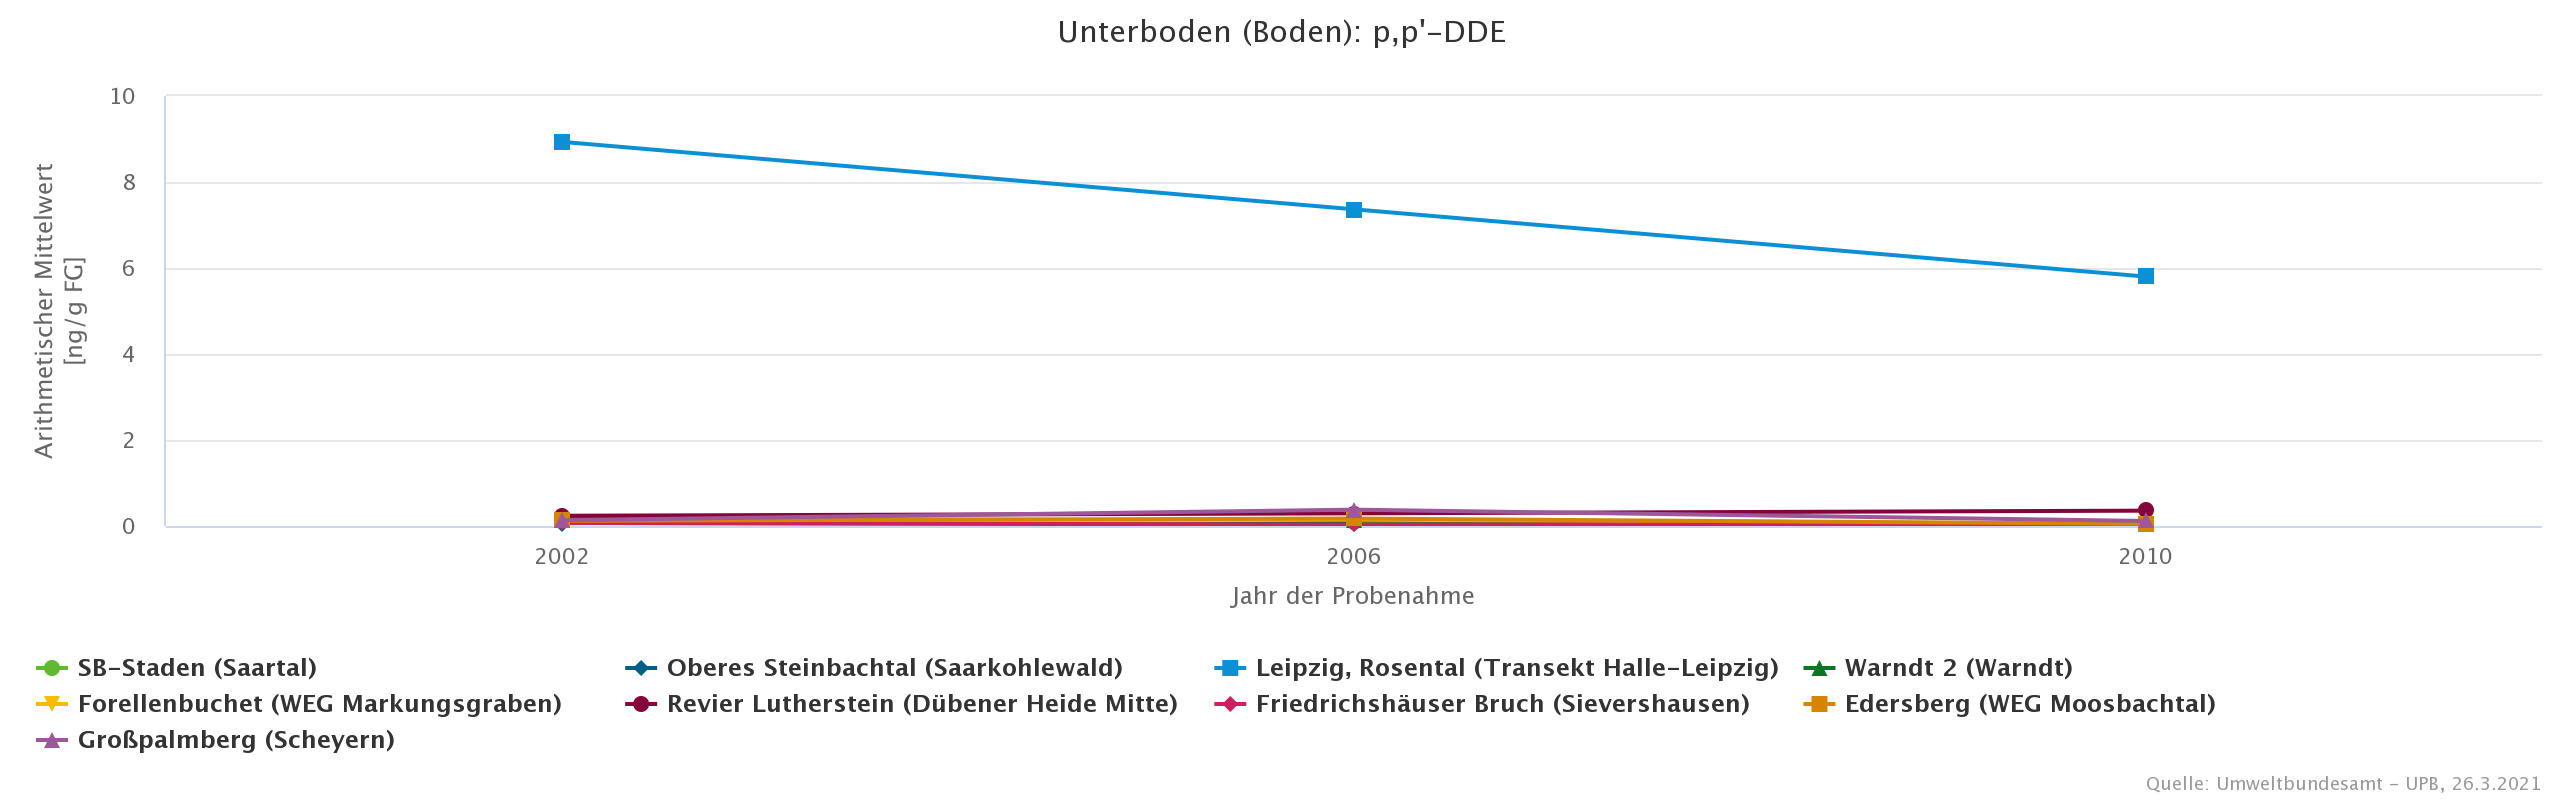 Deutlich höhere DDE-Belastung in Böden aus der ehemaligen DDR